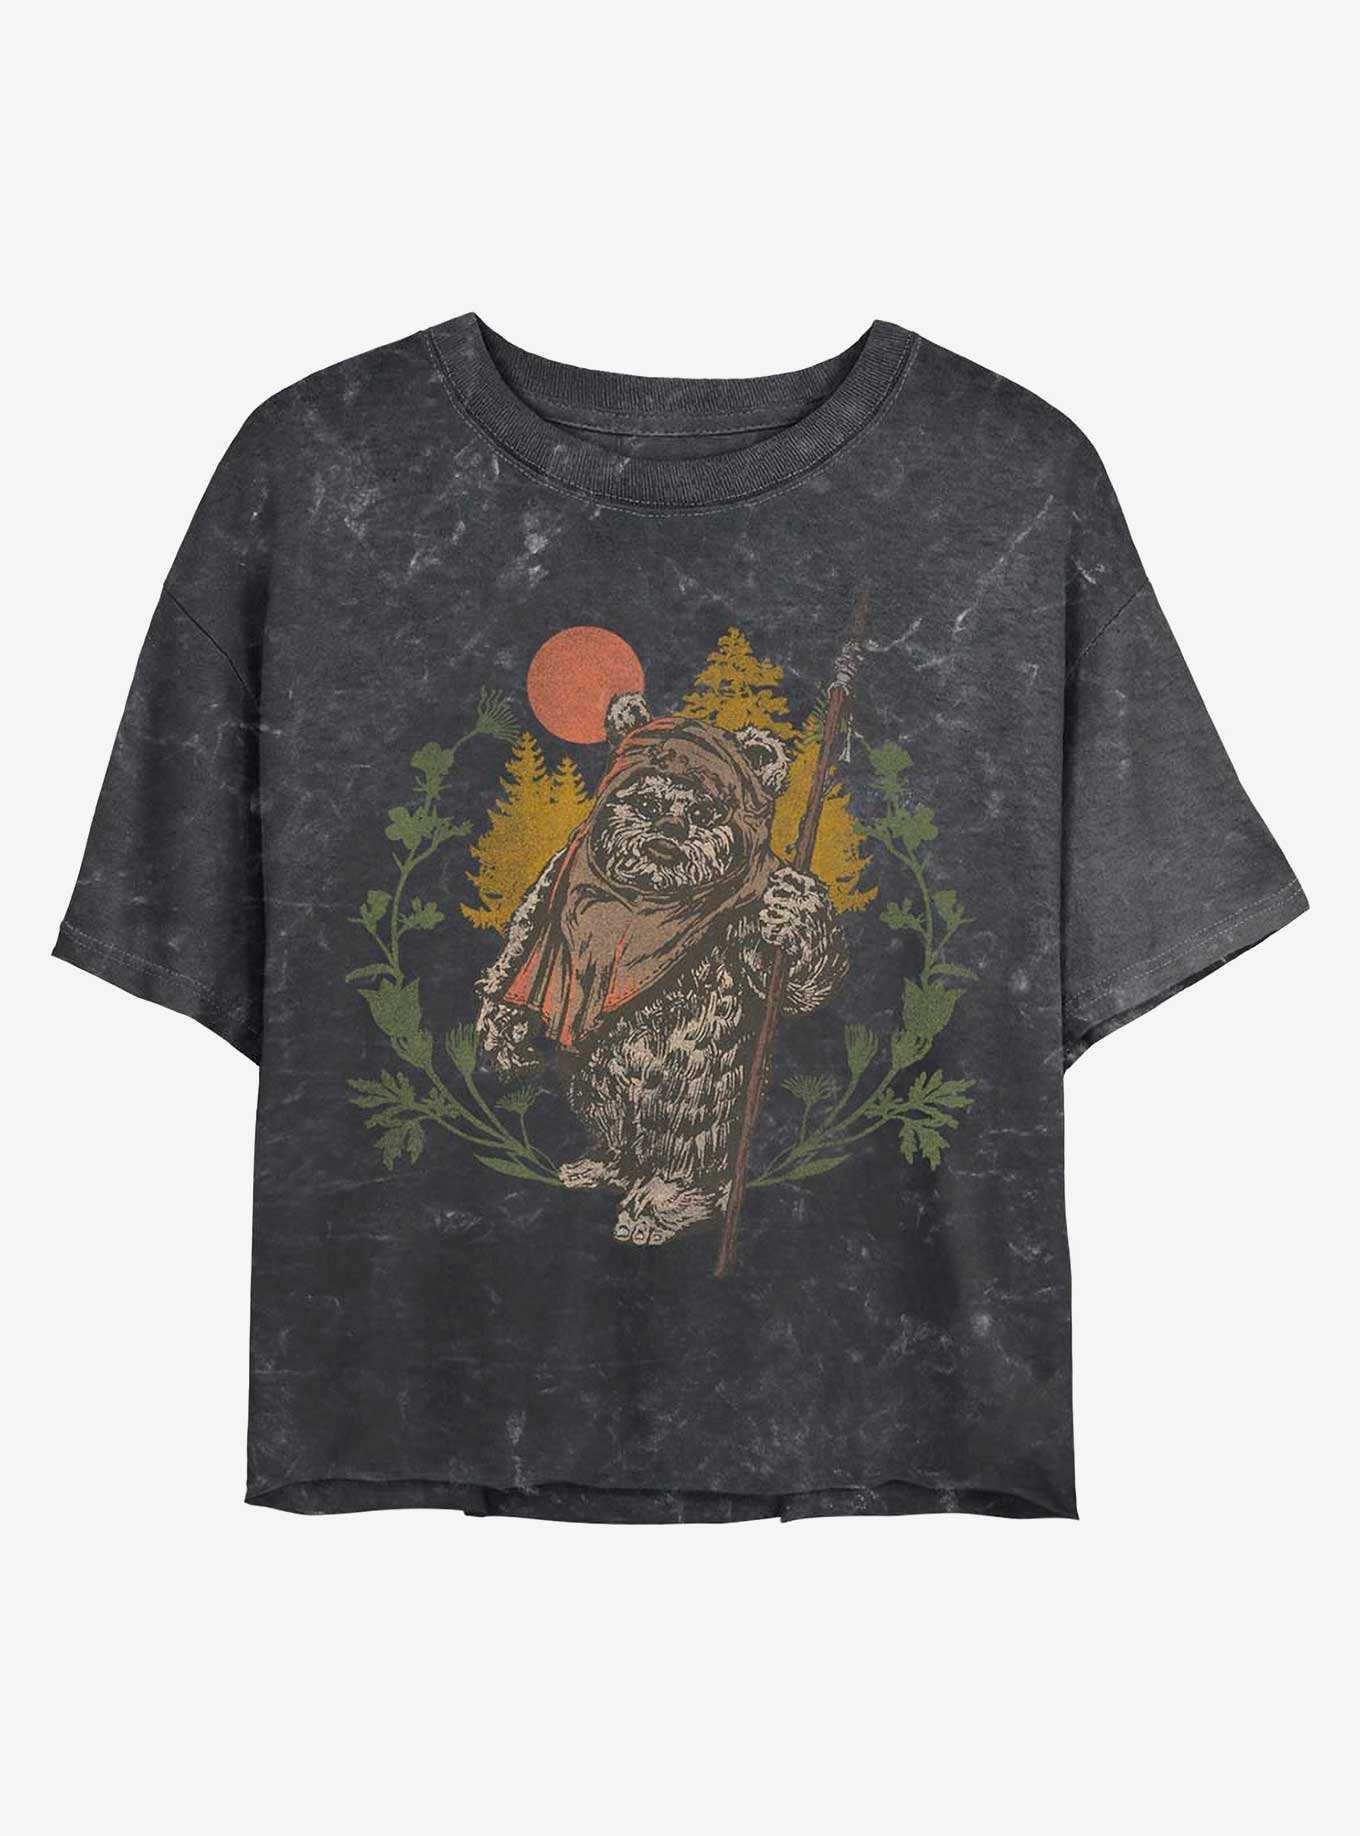 Star Wars Ewok Sunset Mineral Wash Crop Girls T-Shirt, , hi-res